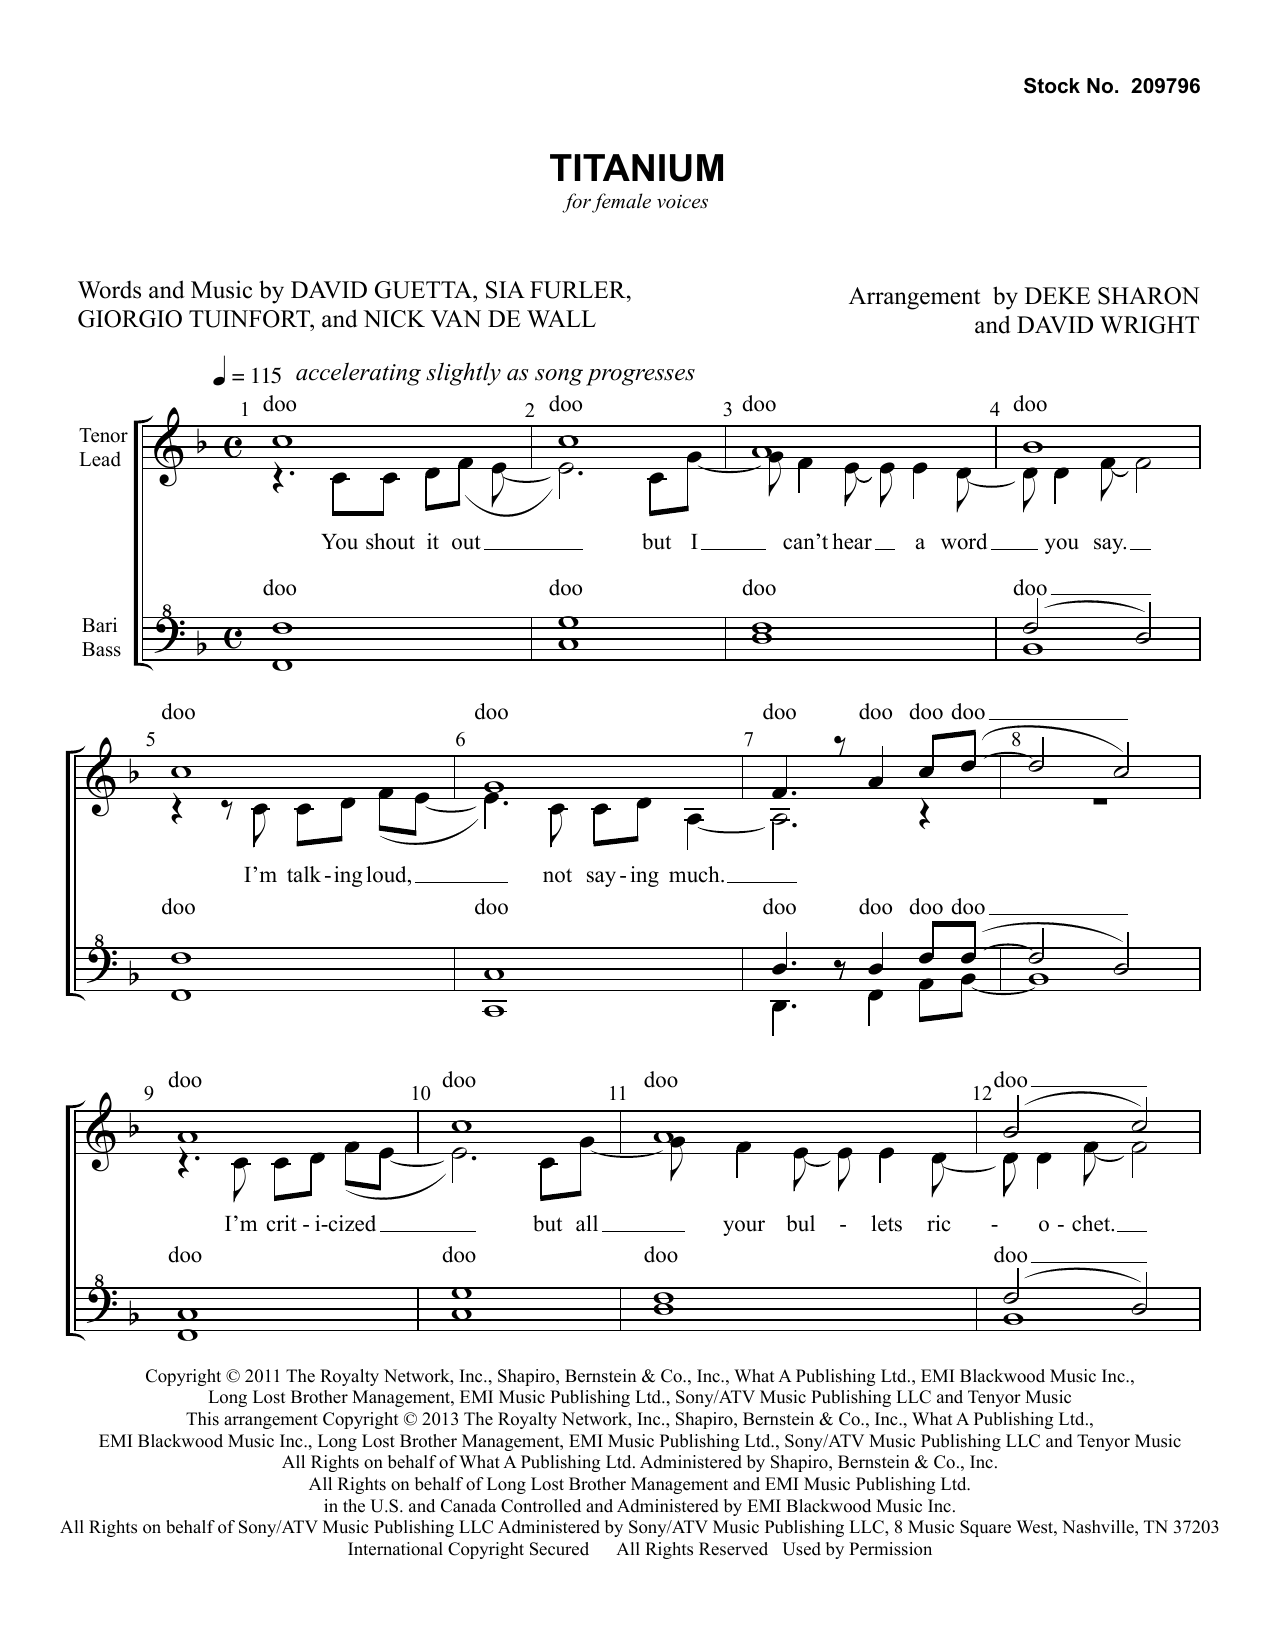 David Guetta Titanium (feat. Sia) (arr. Deke Sharon, David Wright) Sheet Music Notes & Chords for TTBB Choir - Download or Print PDF